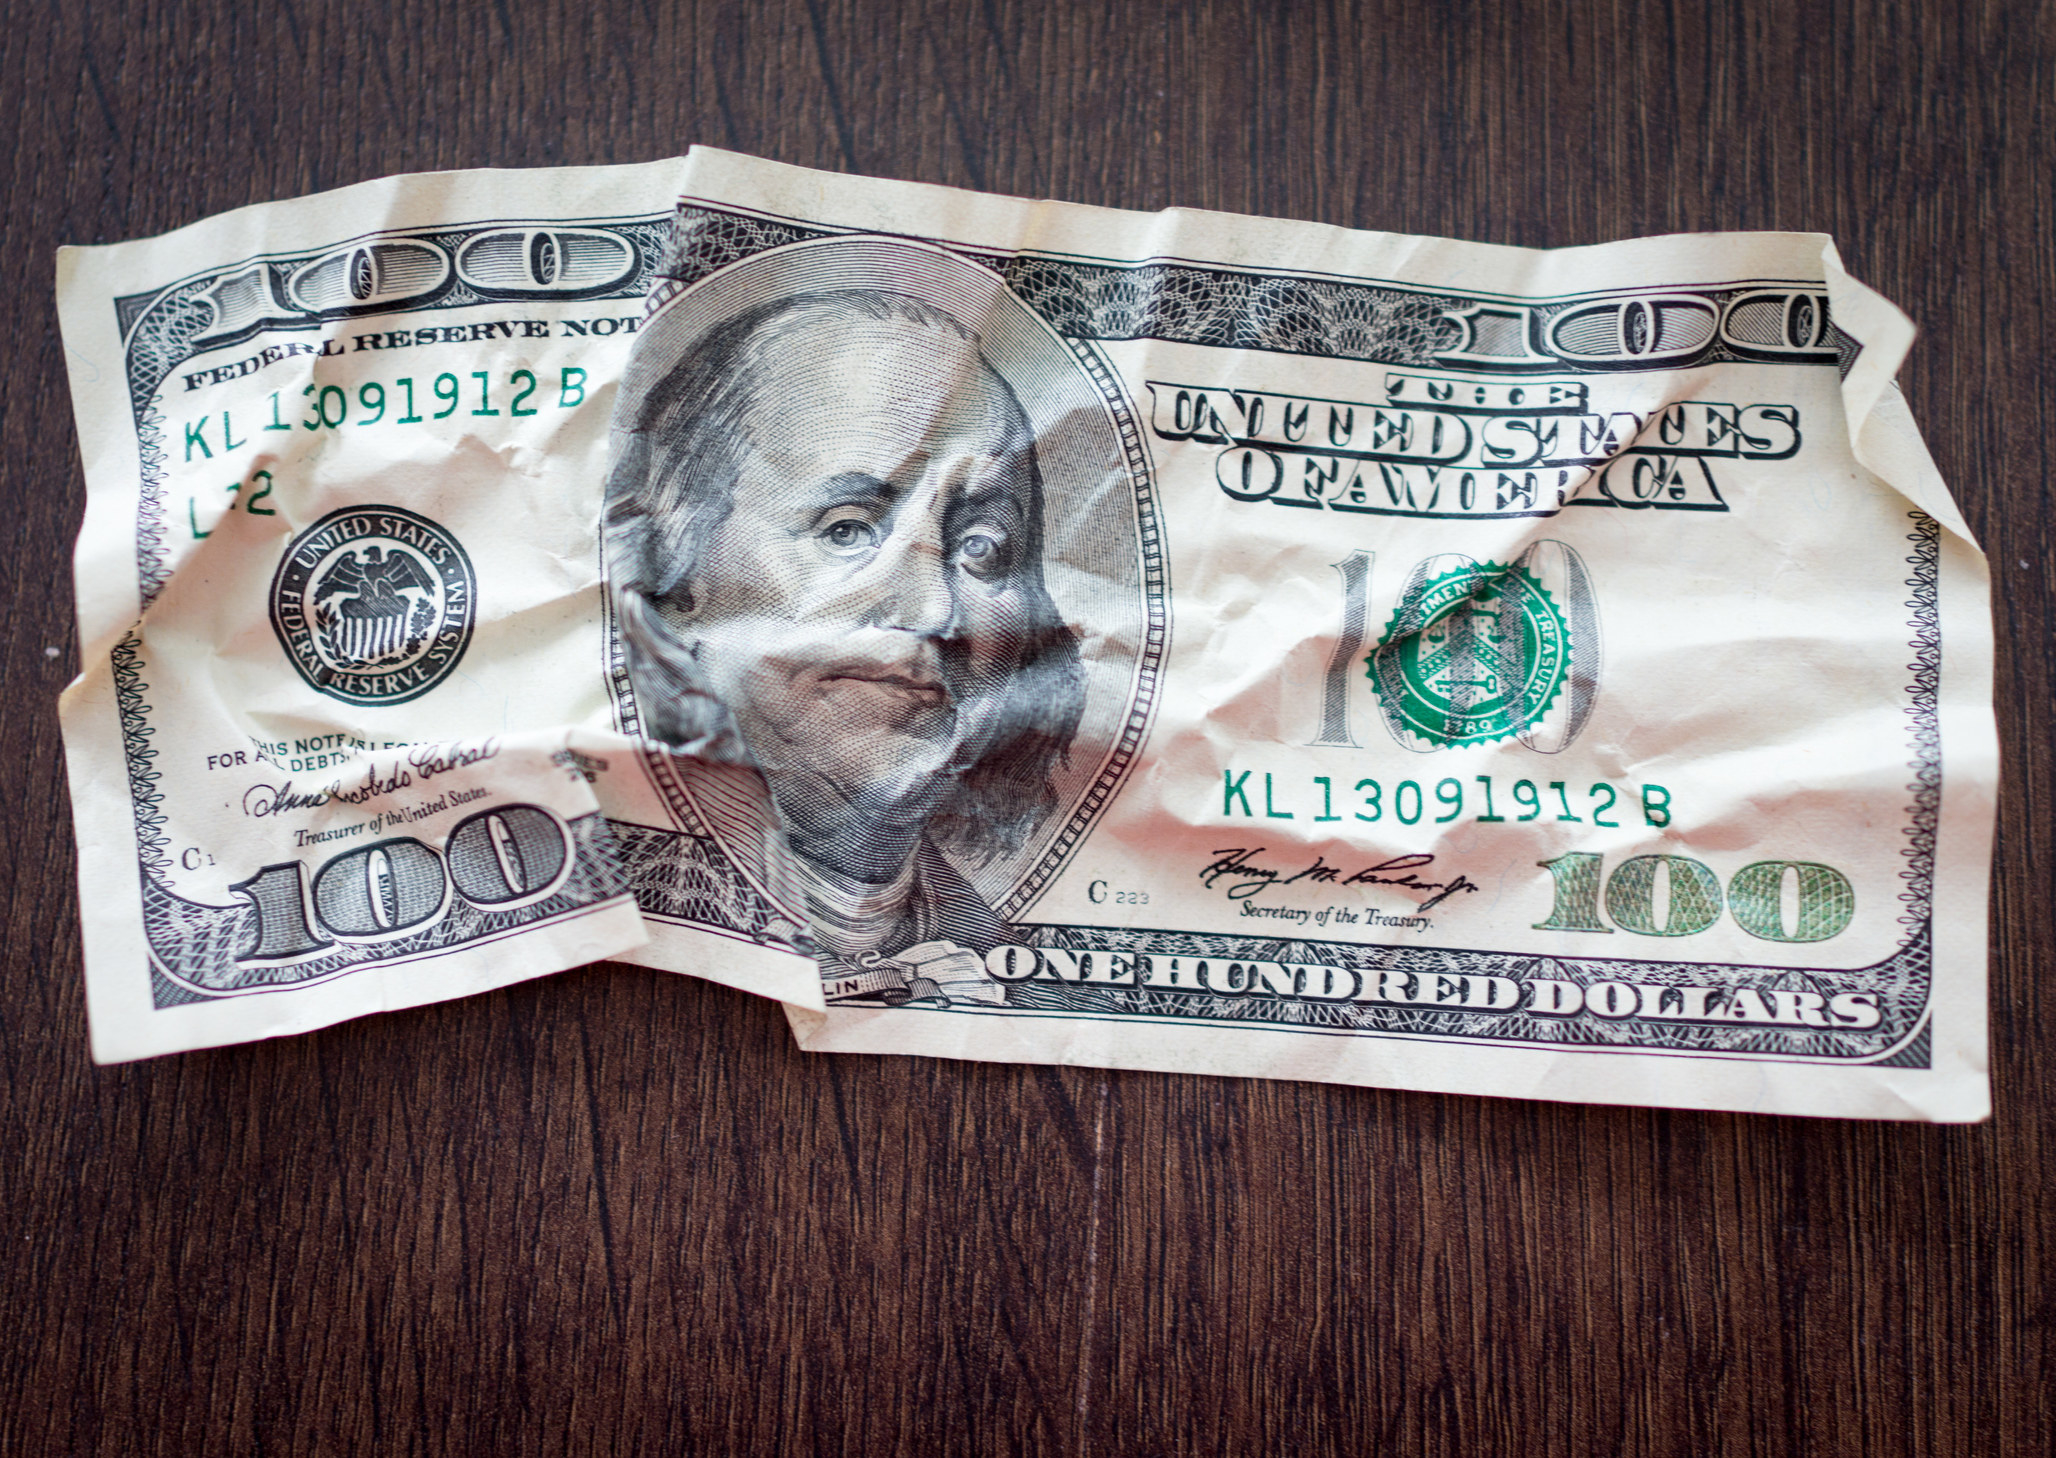 A crumpled $100 bill